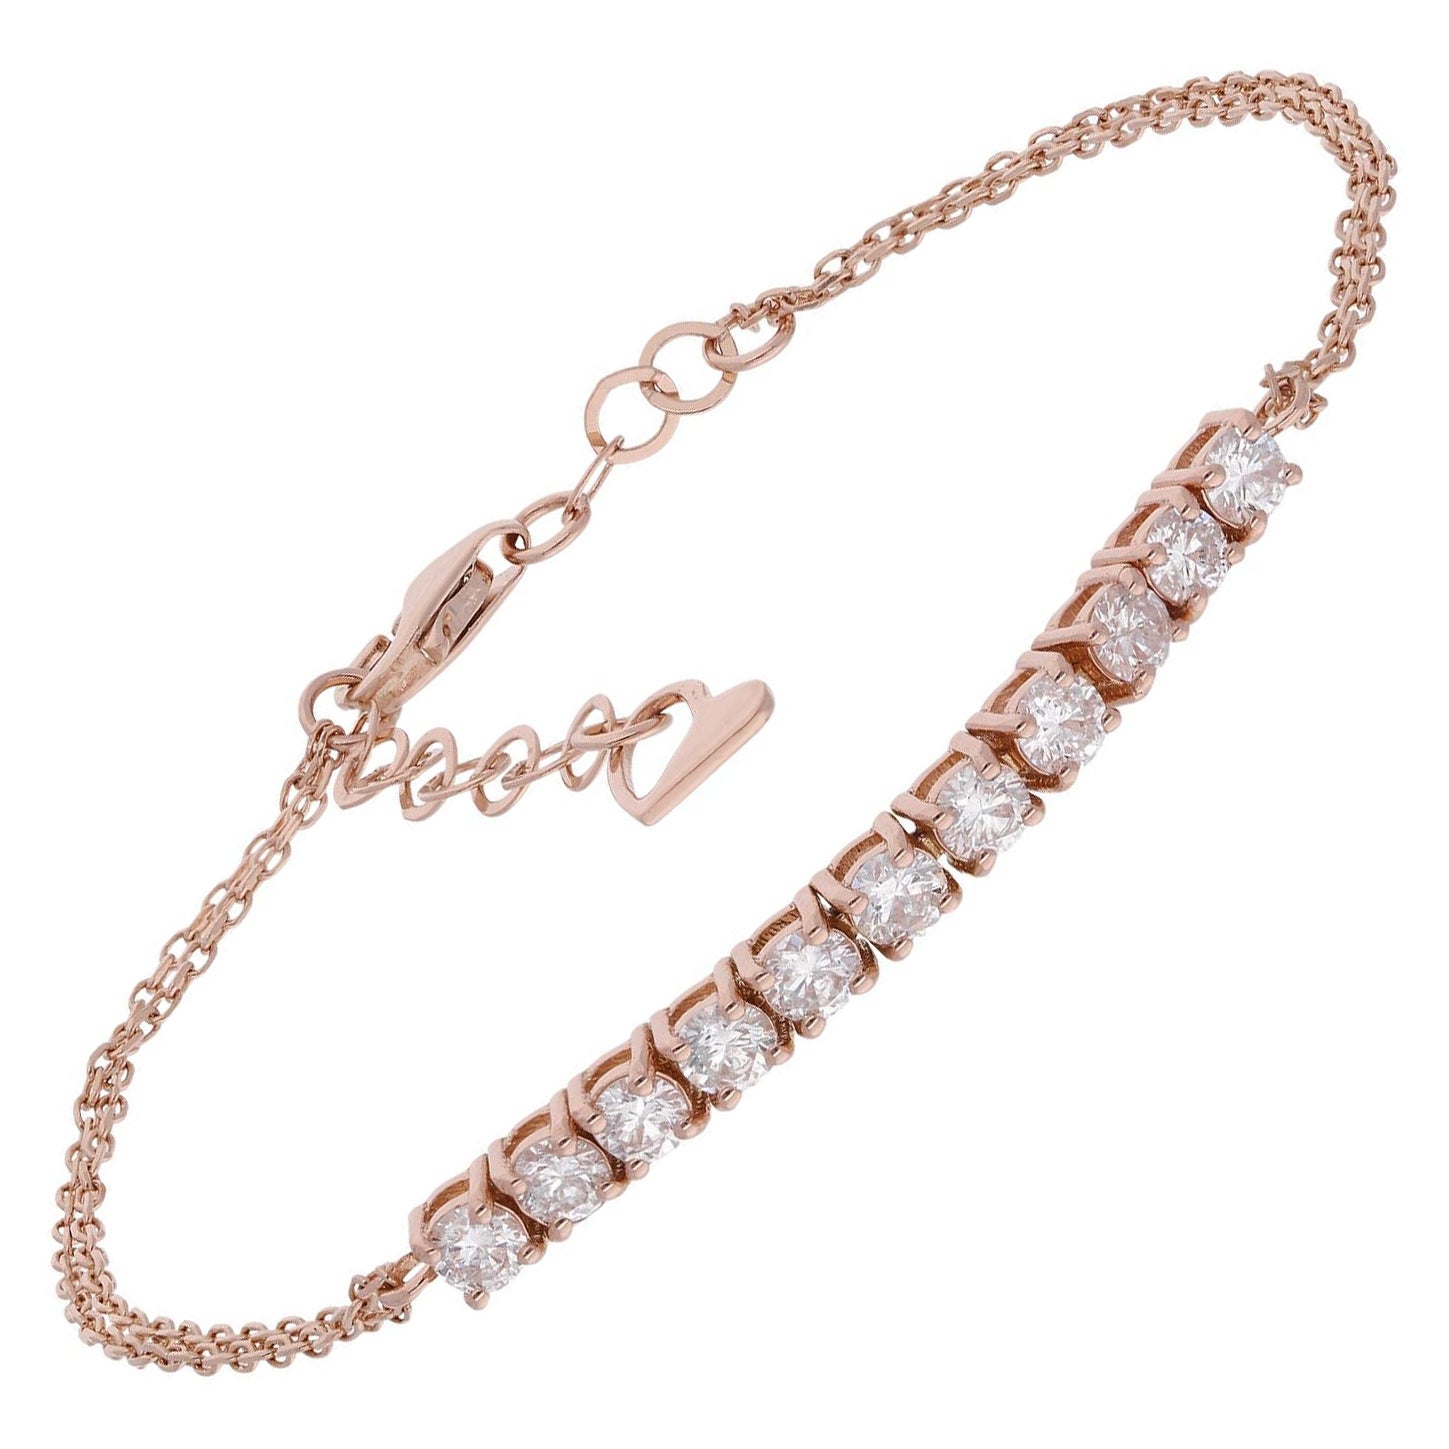 SI Clarity HI Color Diamond Bar Heart Charm Adjustable Bracelet 14 Kt Rose Gold